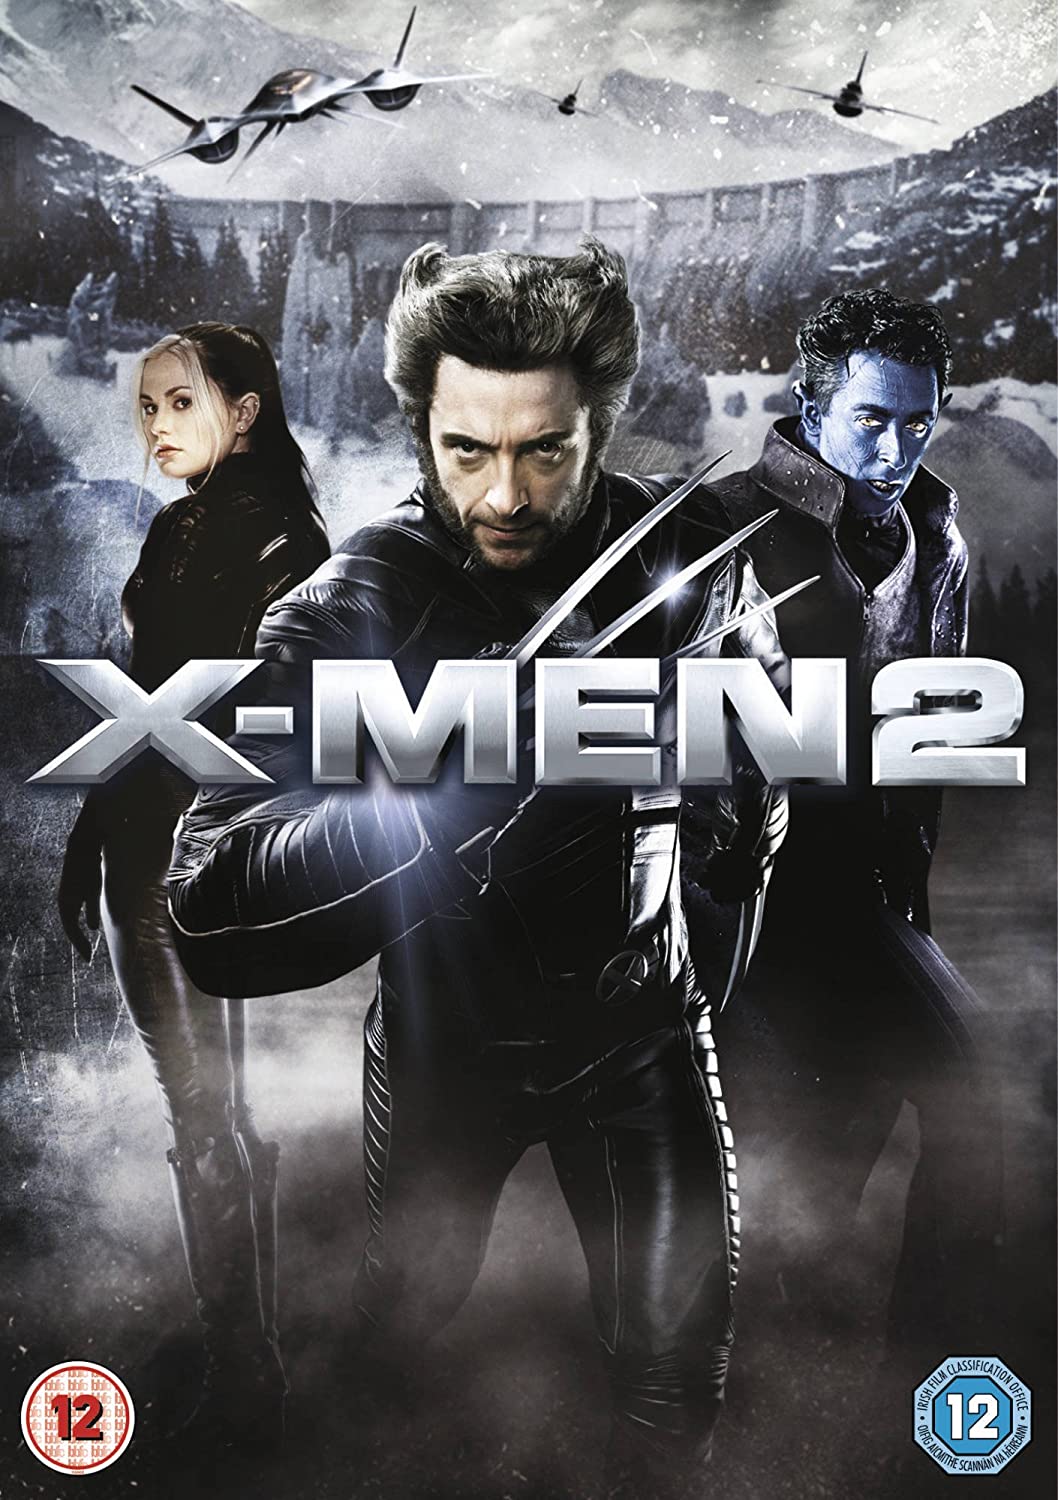 X-Men 2 [2003] - Action/Sci-fi [DVD]